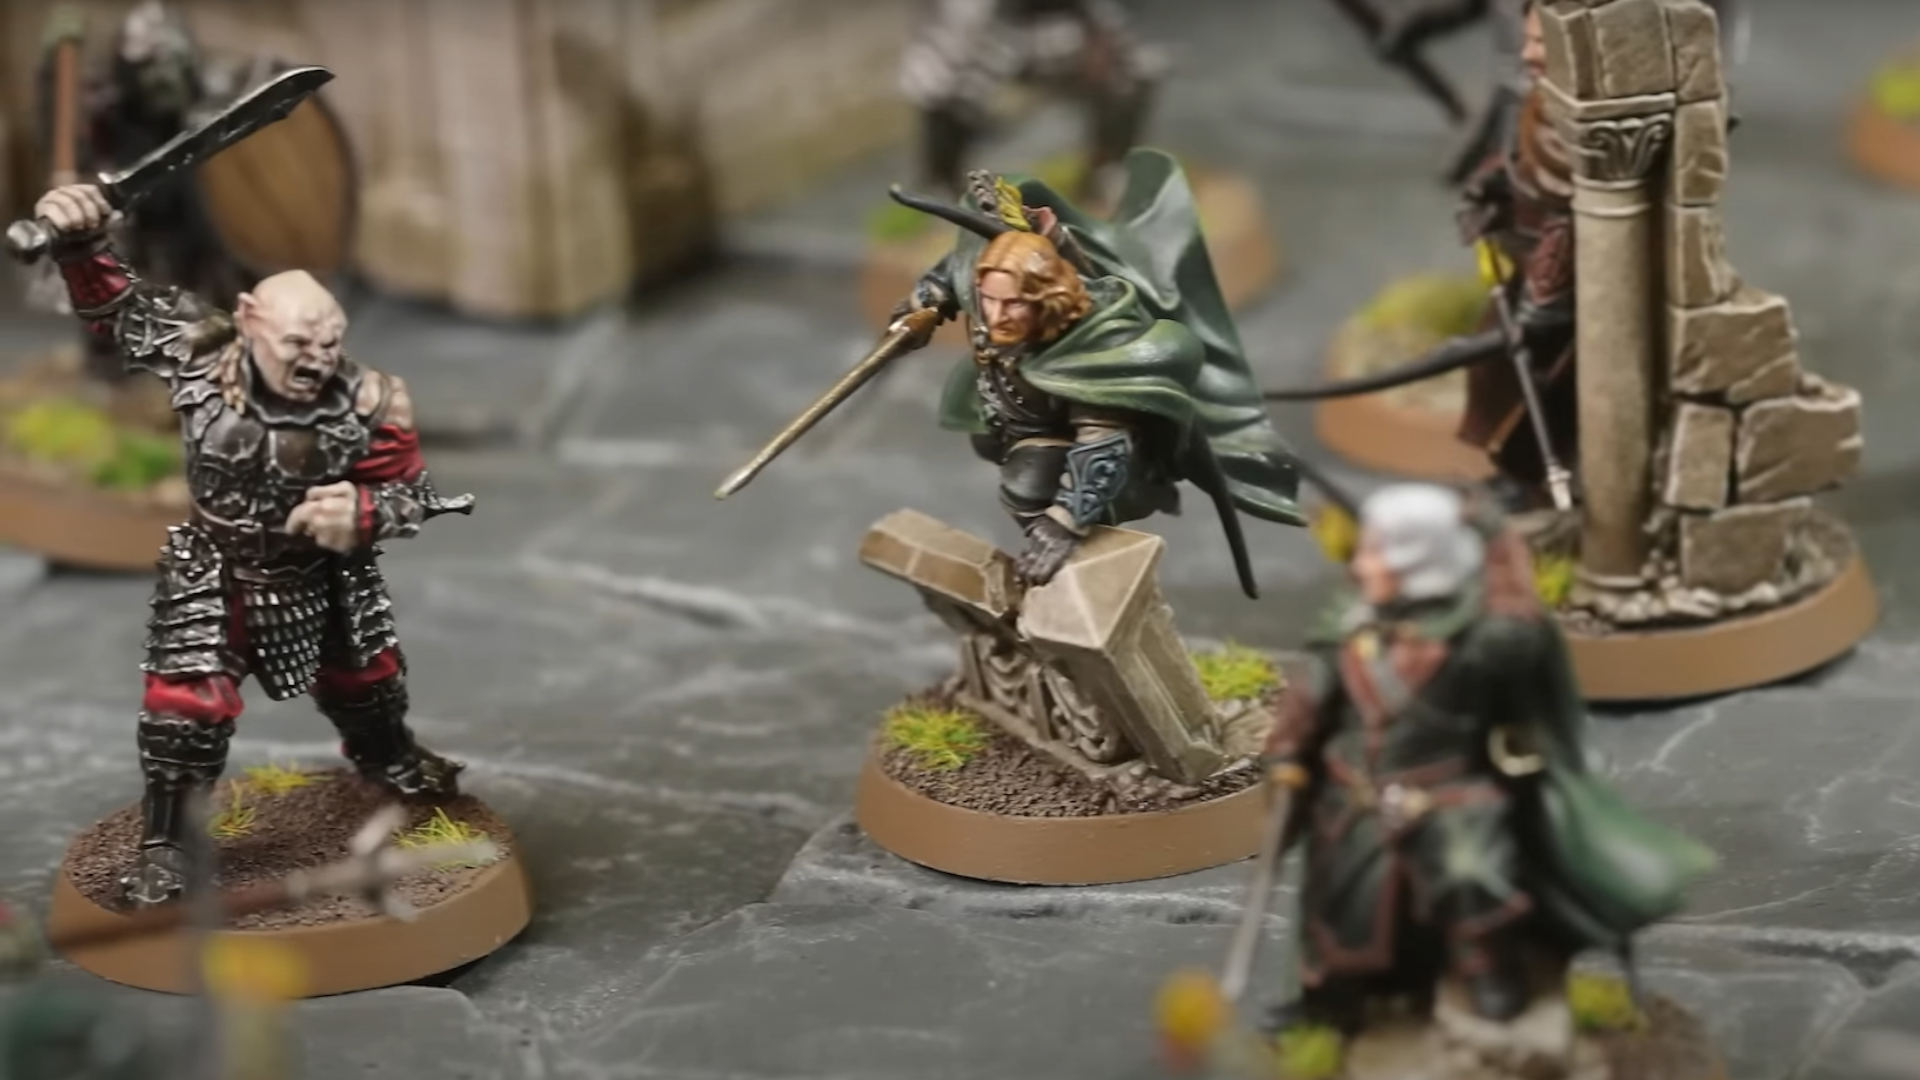 Miniaturas de El Señor de los Anillos Batalla de Osgiliath Faramir y Gothmog en el campo de batalla